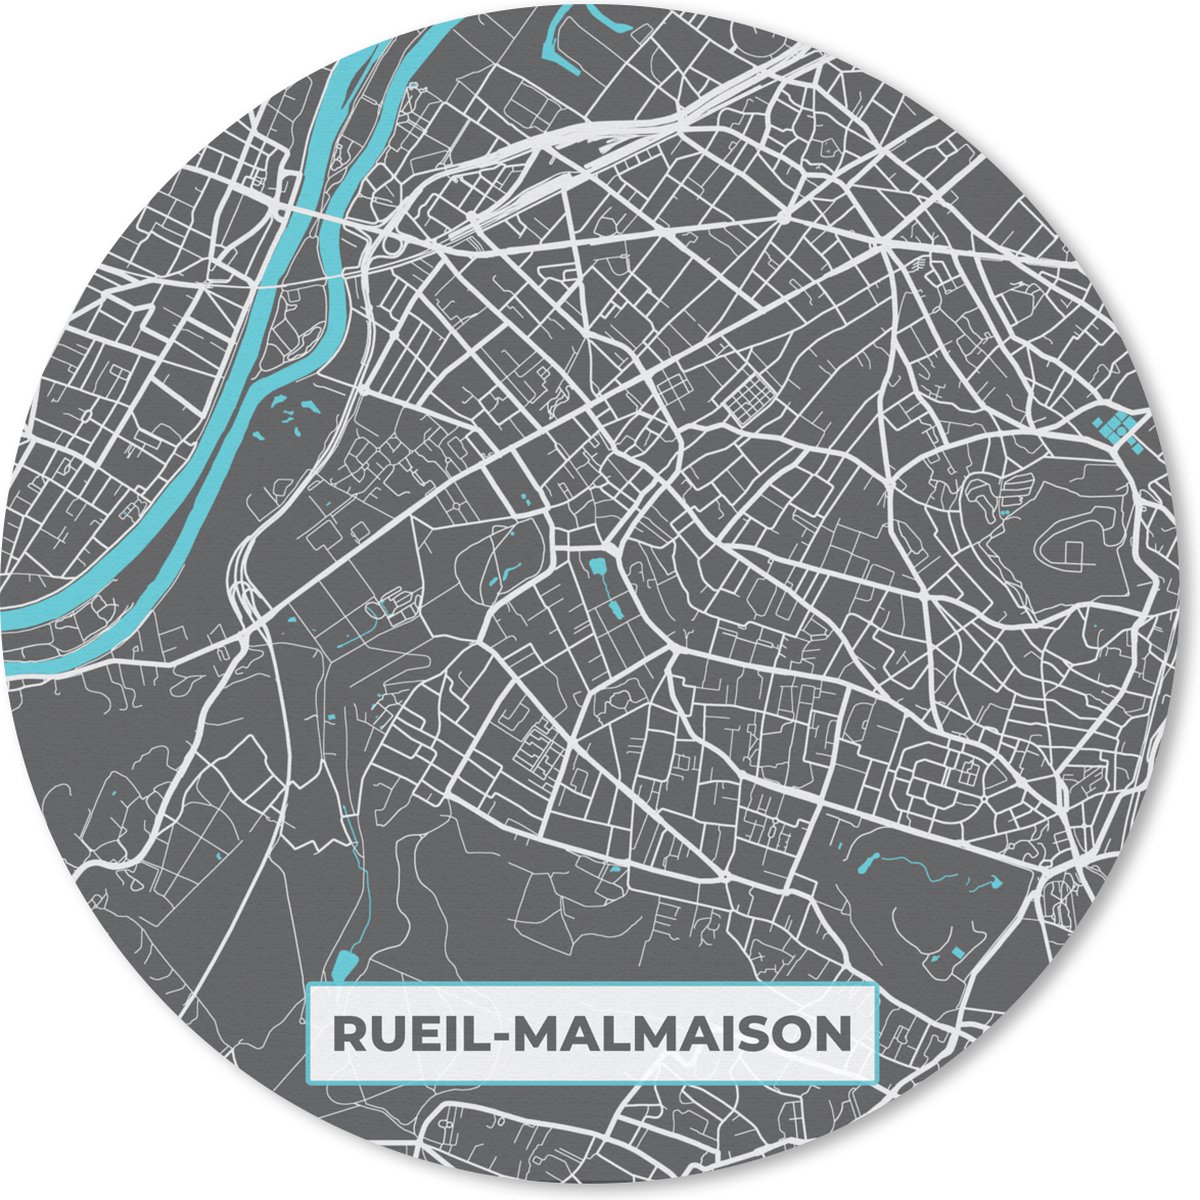 Muismat - Mousepad - Rond - Stadskaart – Frankrijk – Kaart – Rueil-Mamaison – Plattegrond - 30x30 cm - Ronde muismat